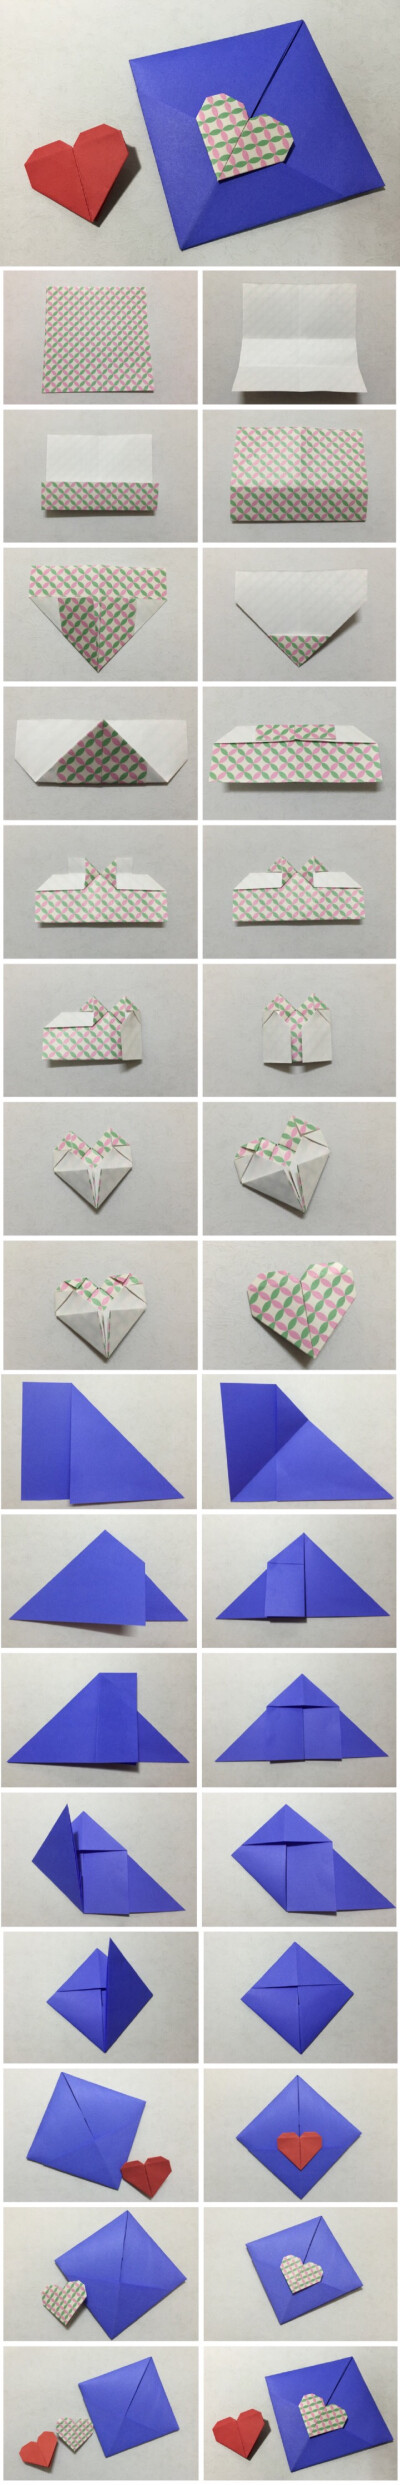 长方形信纸折爱心图片